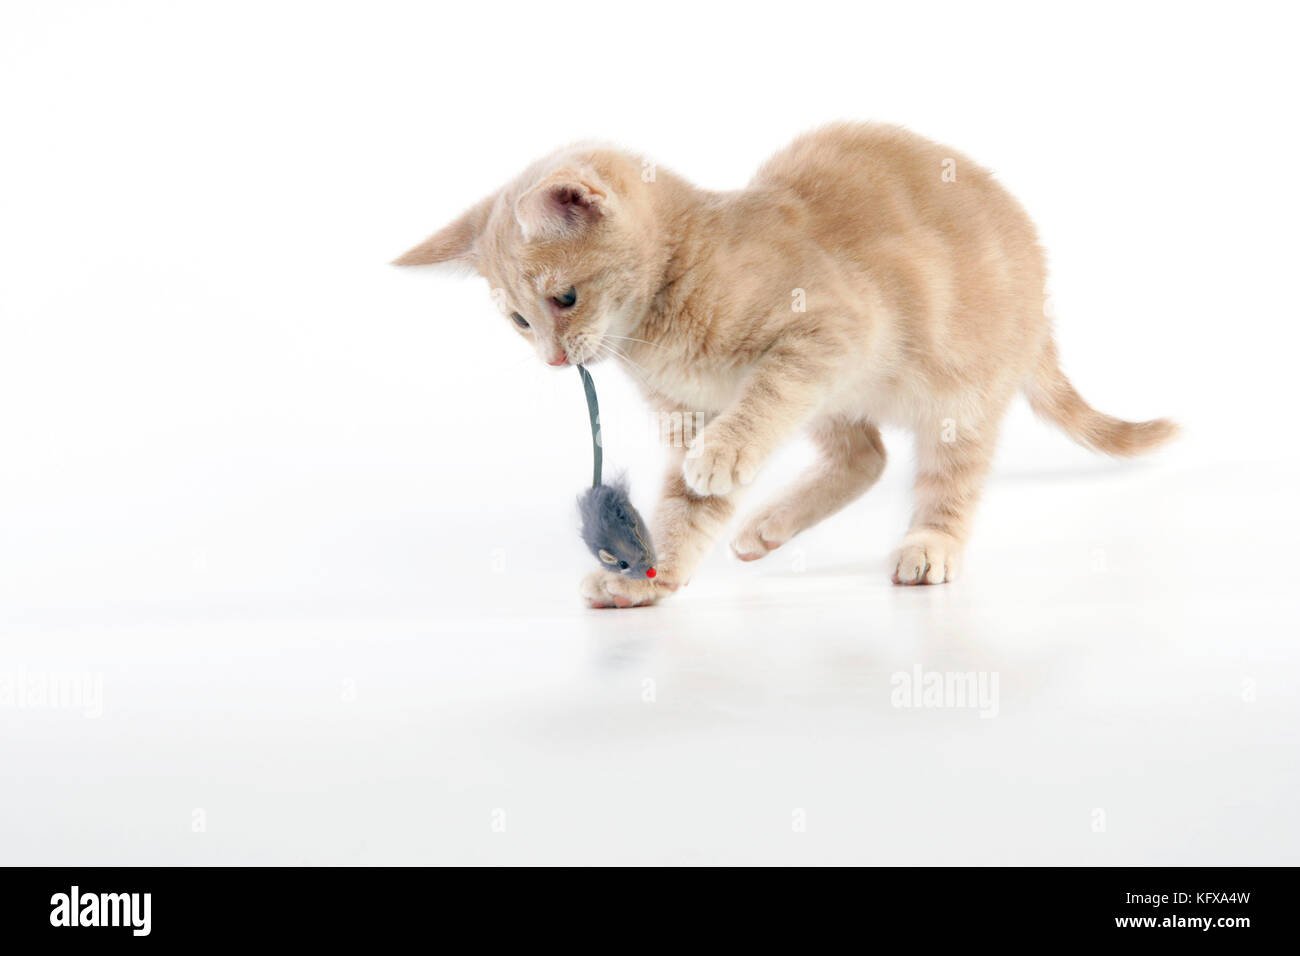 CAT. un chaton de tabby de crème jouant avec une souris de jouet Banque D'Images